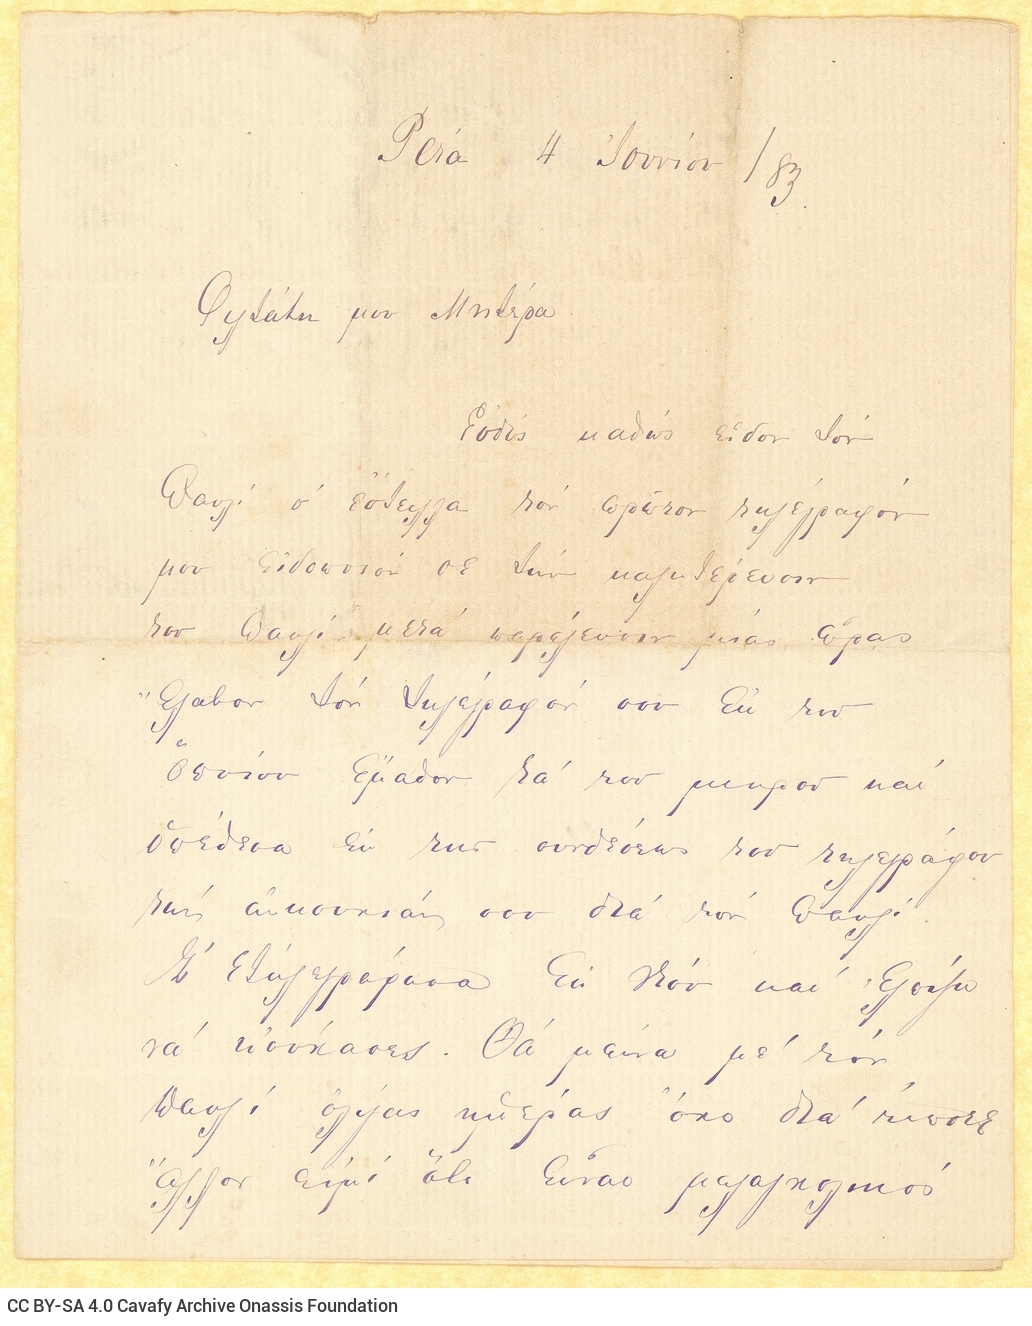 Χειρόγραφη επιστολή του Αλέξανδρου Καβάφη προς τη μητέρα του Χαρίκλ